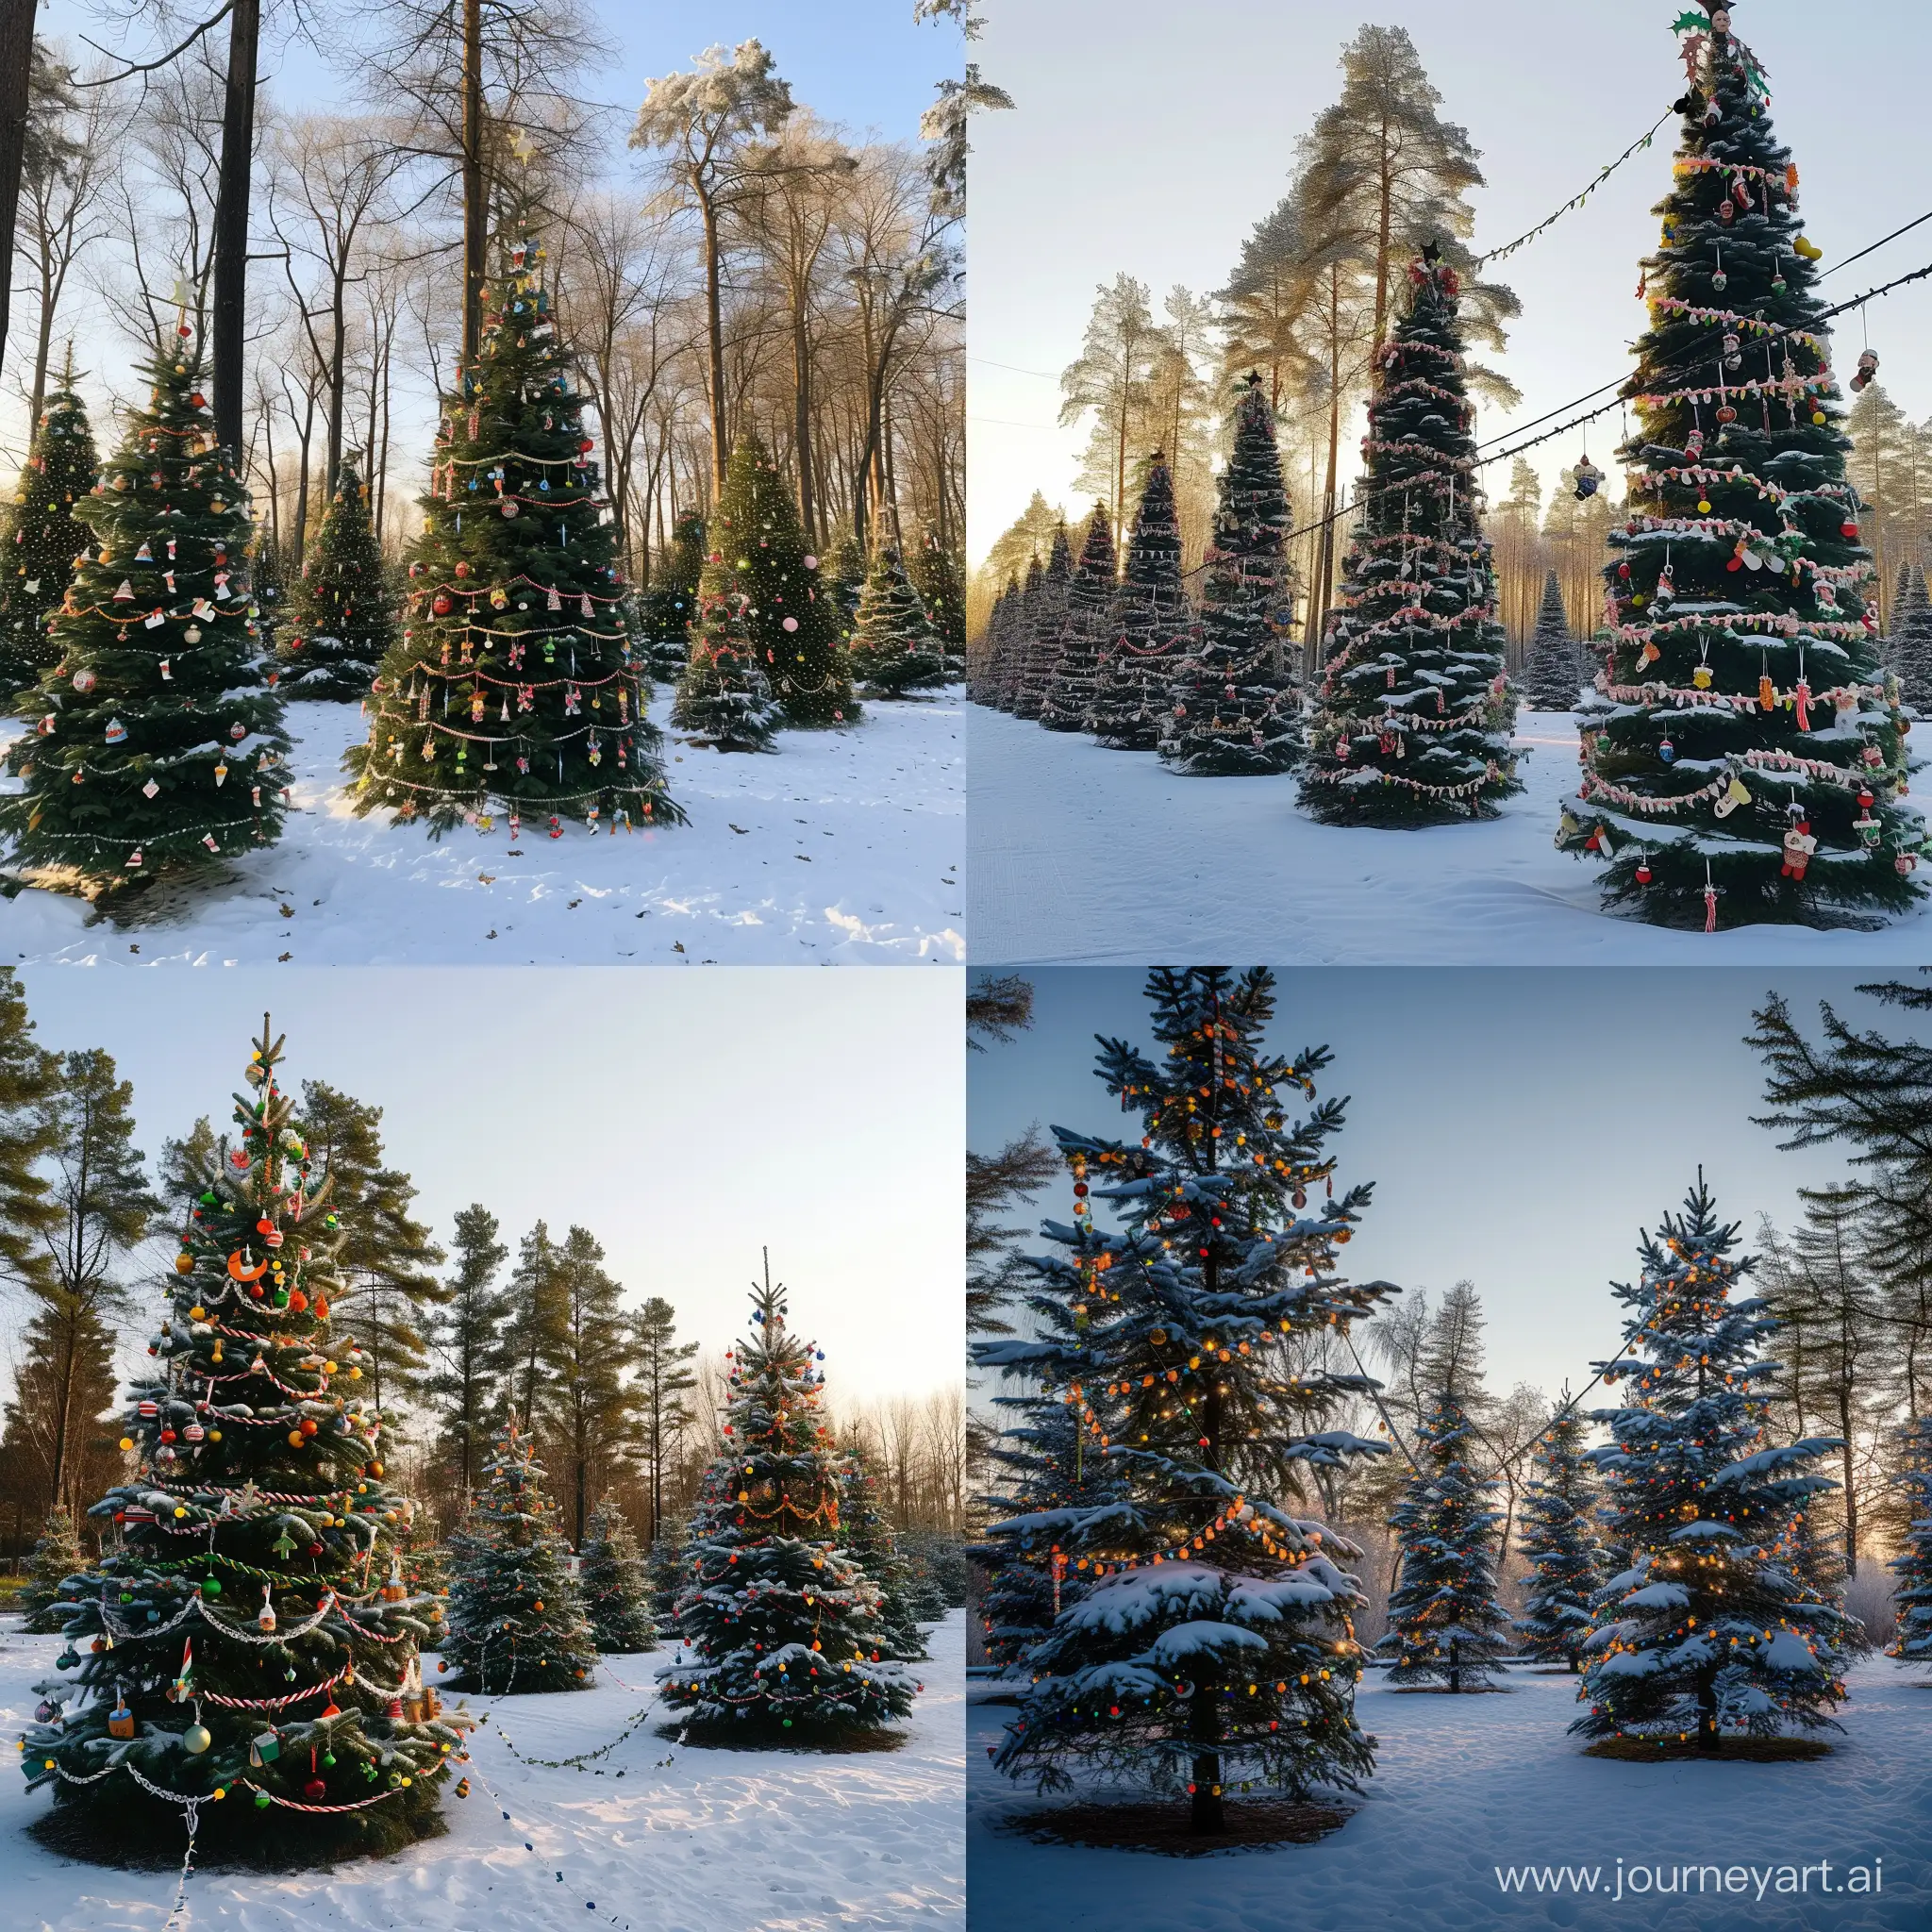 вечер, безоблачное небо, снег, все елки в лесу украшены по новогоднему большим количеством гирлянд и игрушек